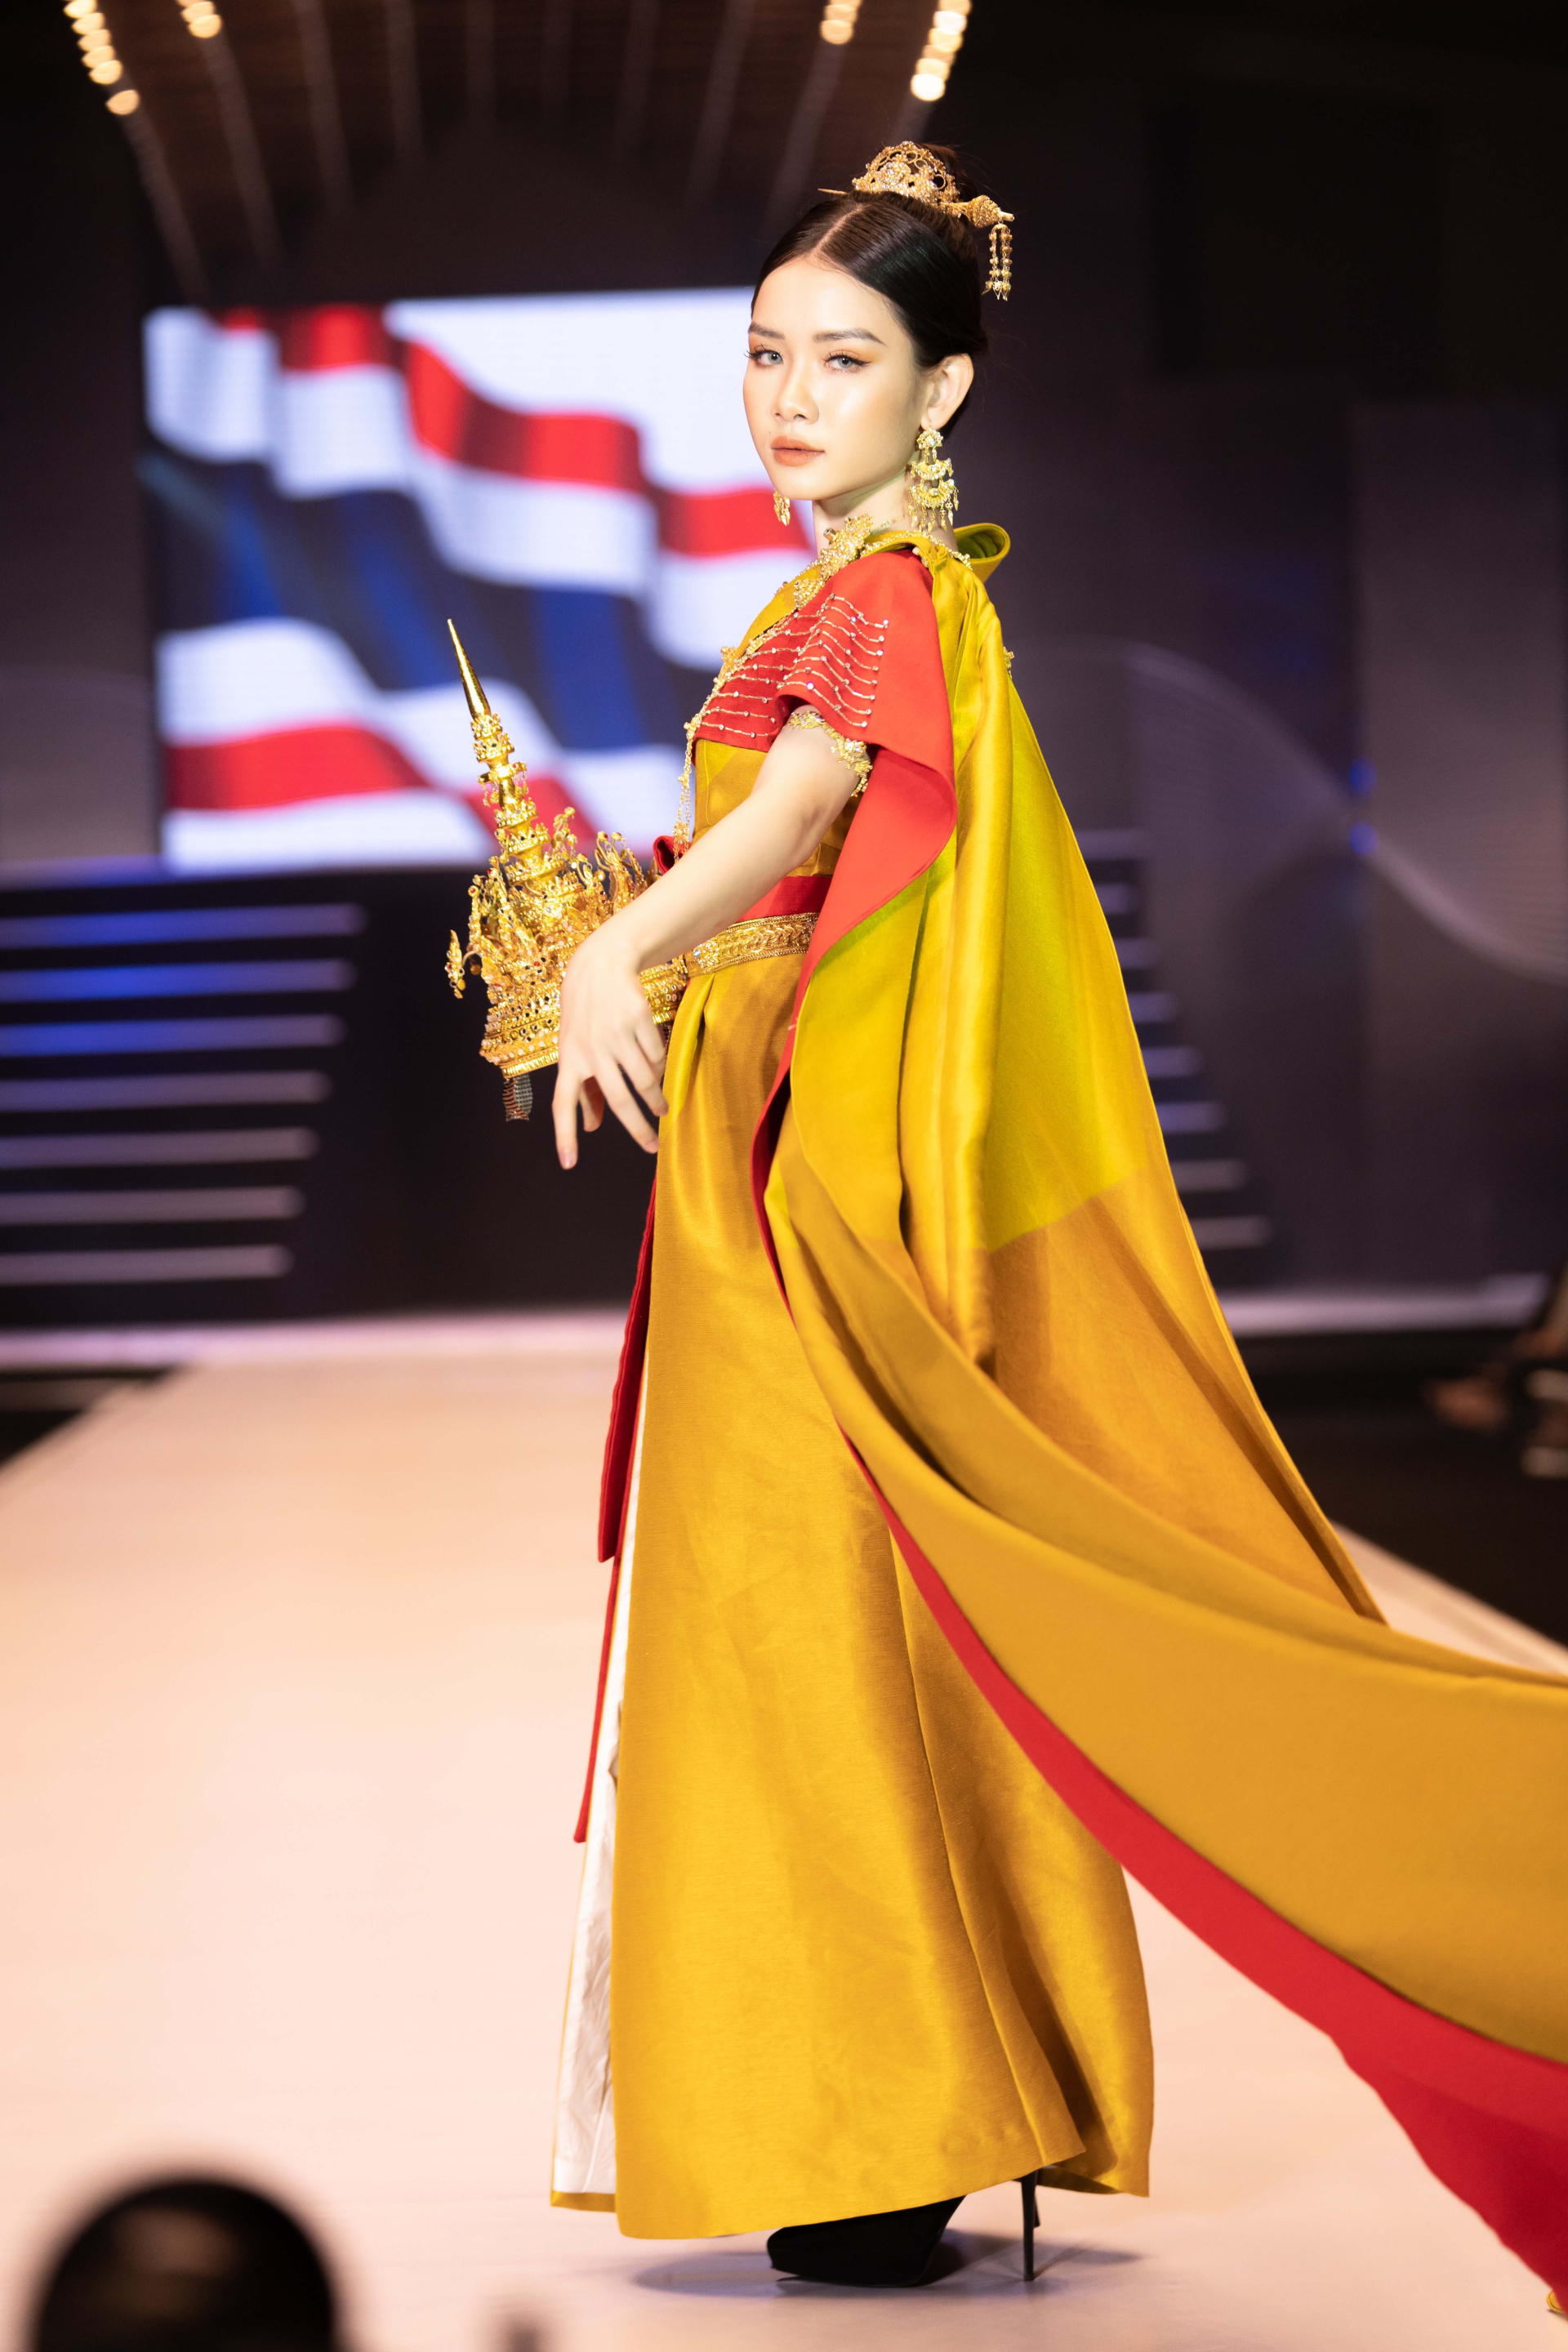 Mẫu nhí mở màn ấn tượng tại Đại hội Siêu mẫu nhí cùng trang phục lấy ý tưởng từ xứ sở chùa Vàng-5